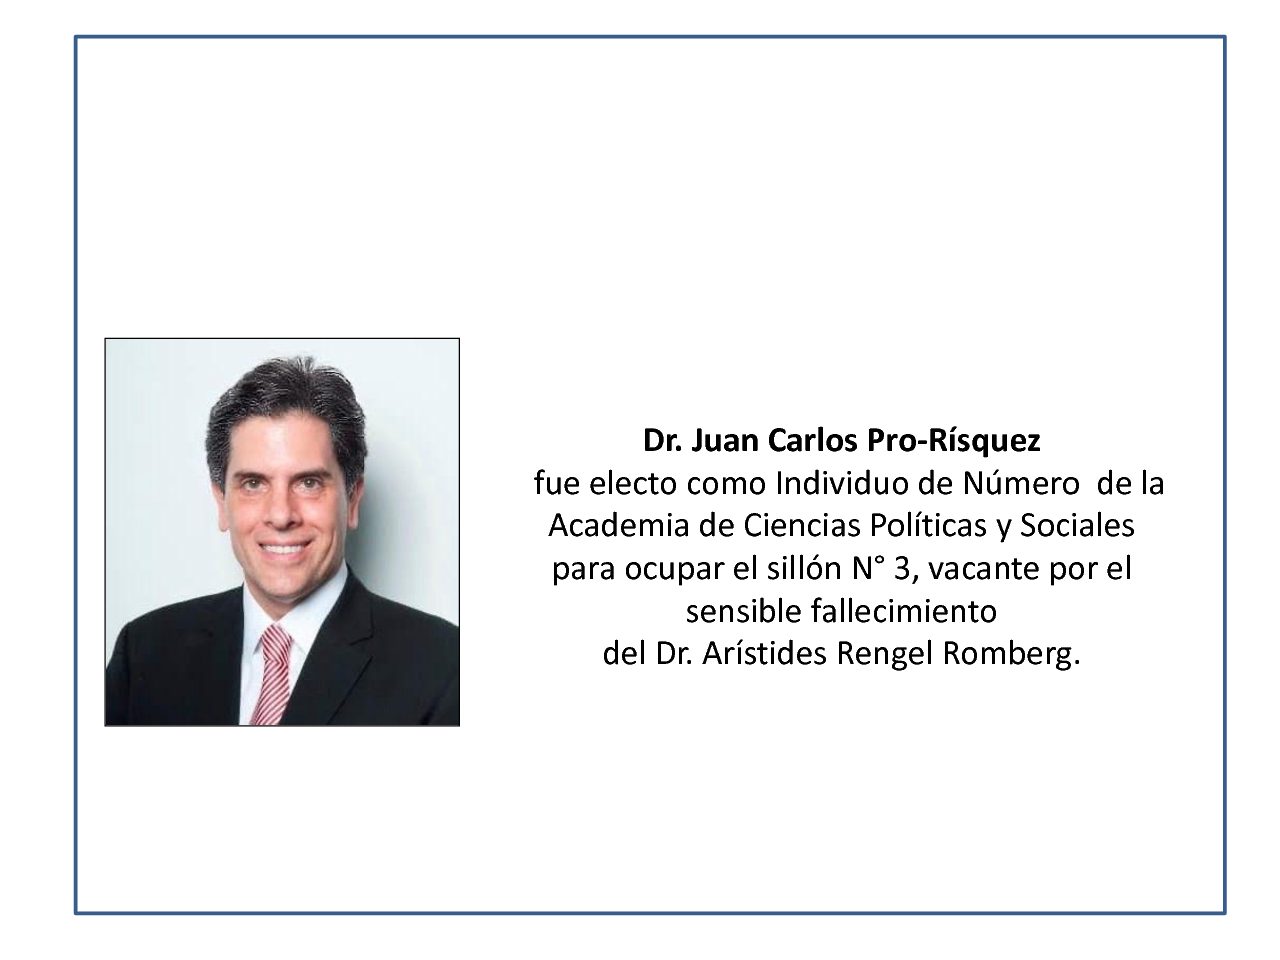 Dr. JUAN CARLOS PRÓ-RÍSQUEZ electo como Individuo de Número de la Academia de Ciencias Políticas y Sociales